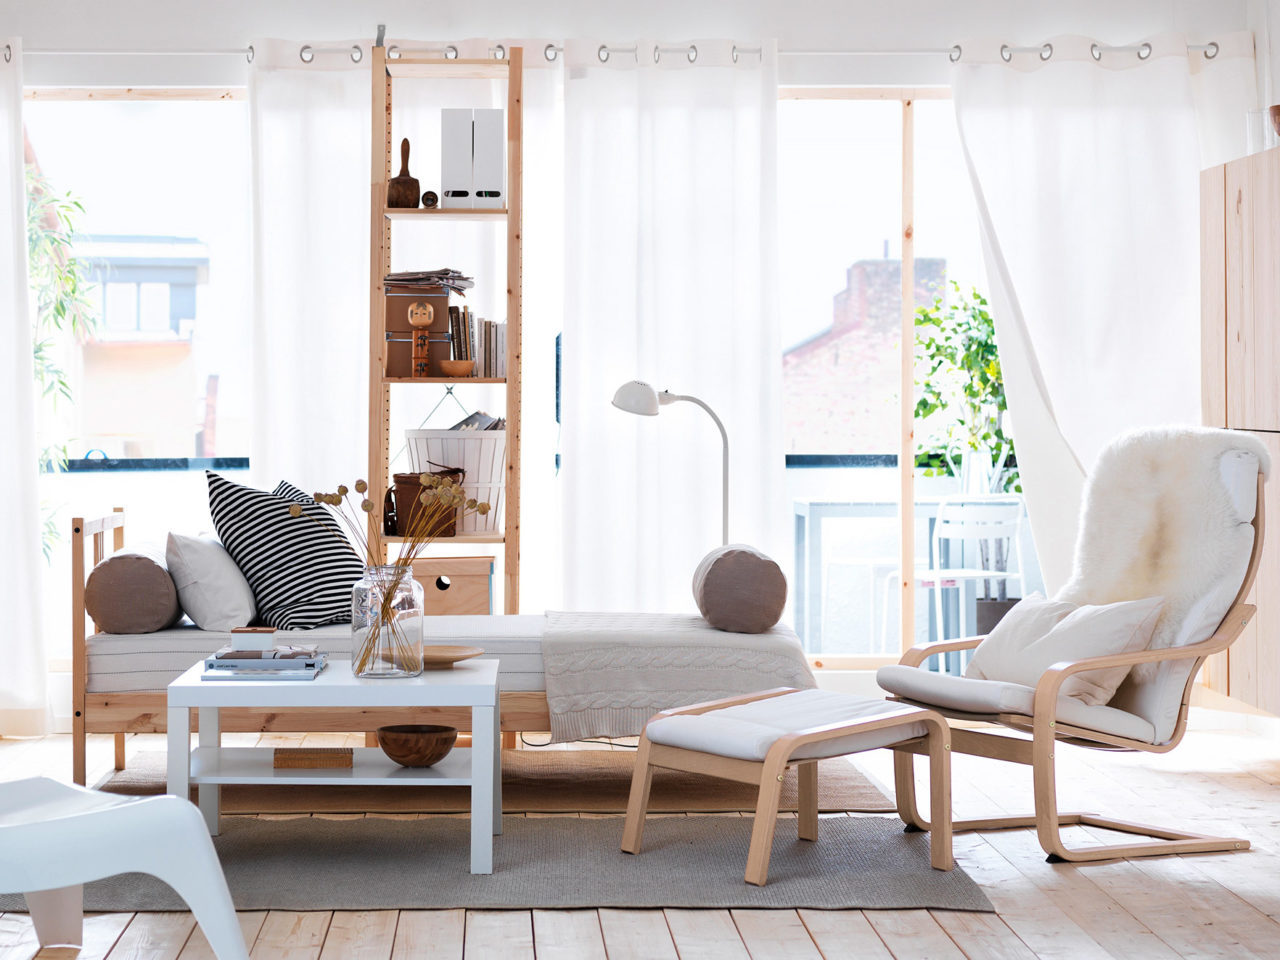 Ett ljust rum med solbelysta golv till tak-fönster, en säng och hylla i ljust trä samt en fåtölj och fotpall, modell POÄNG.